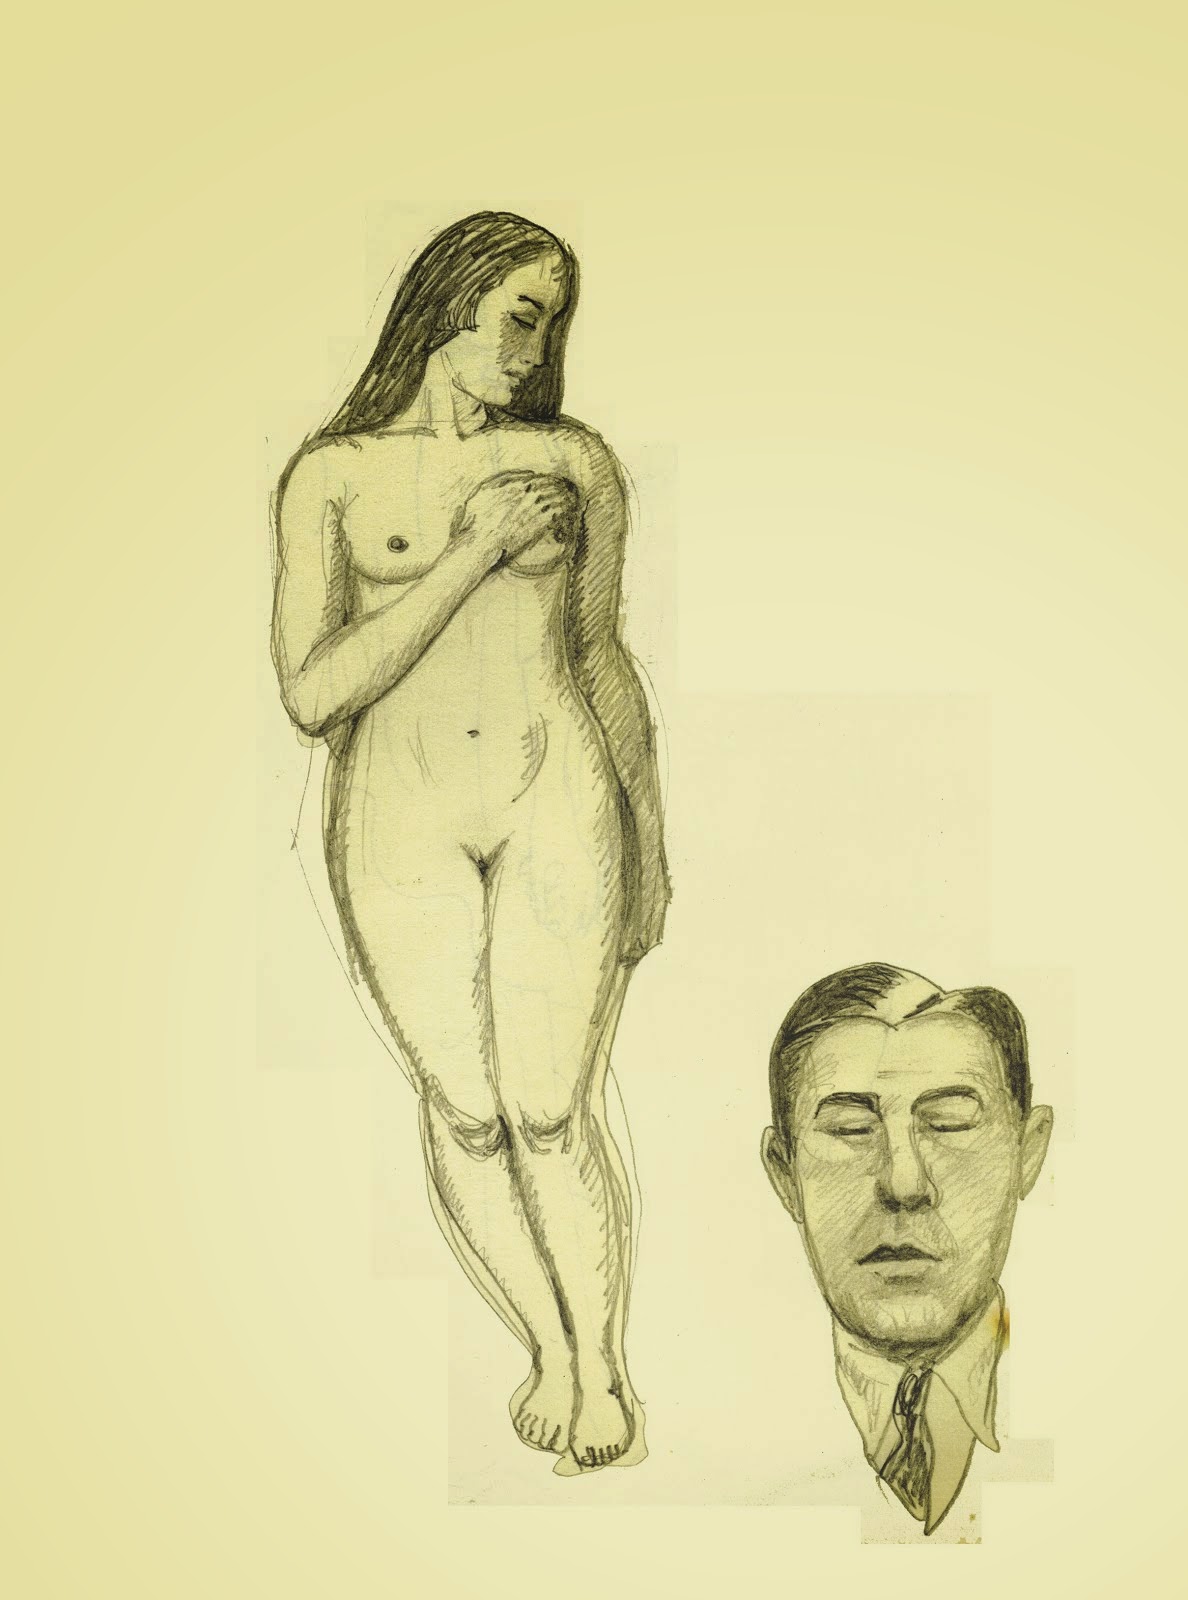 Magritte & the hidden woman